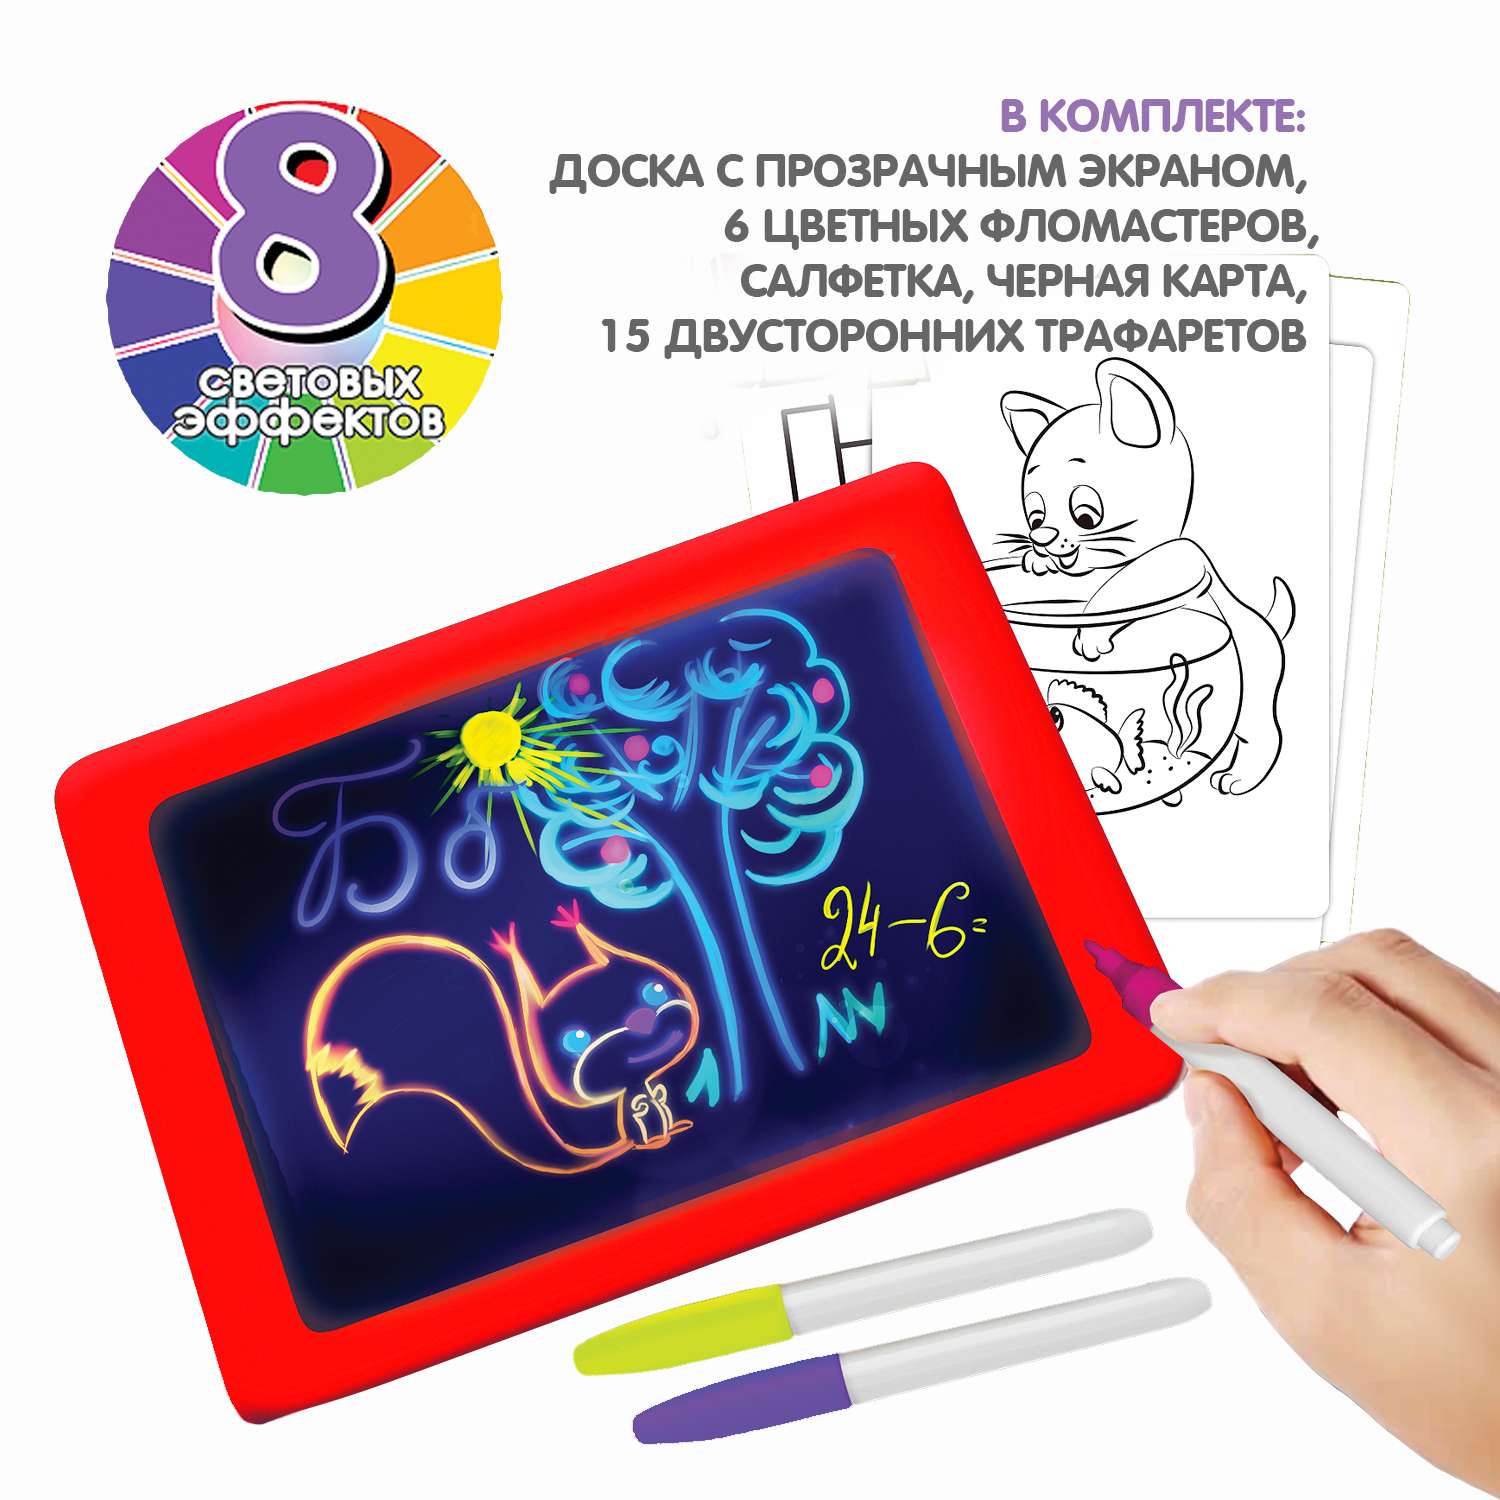 Планшет для рисования BONDIBON с экраном и подсветкой 6 фломастеров и обучающие карточки красного цвета - фото 2